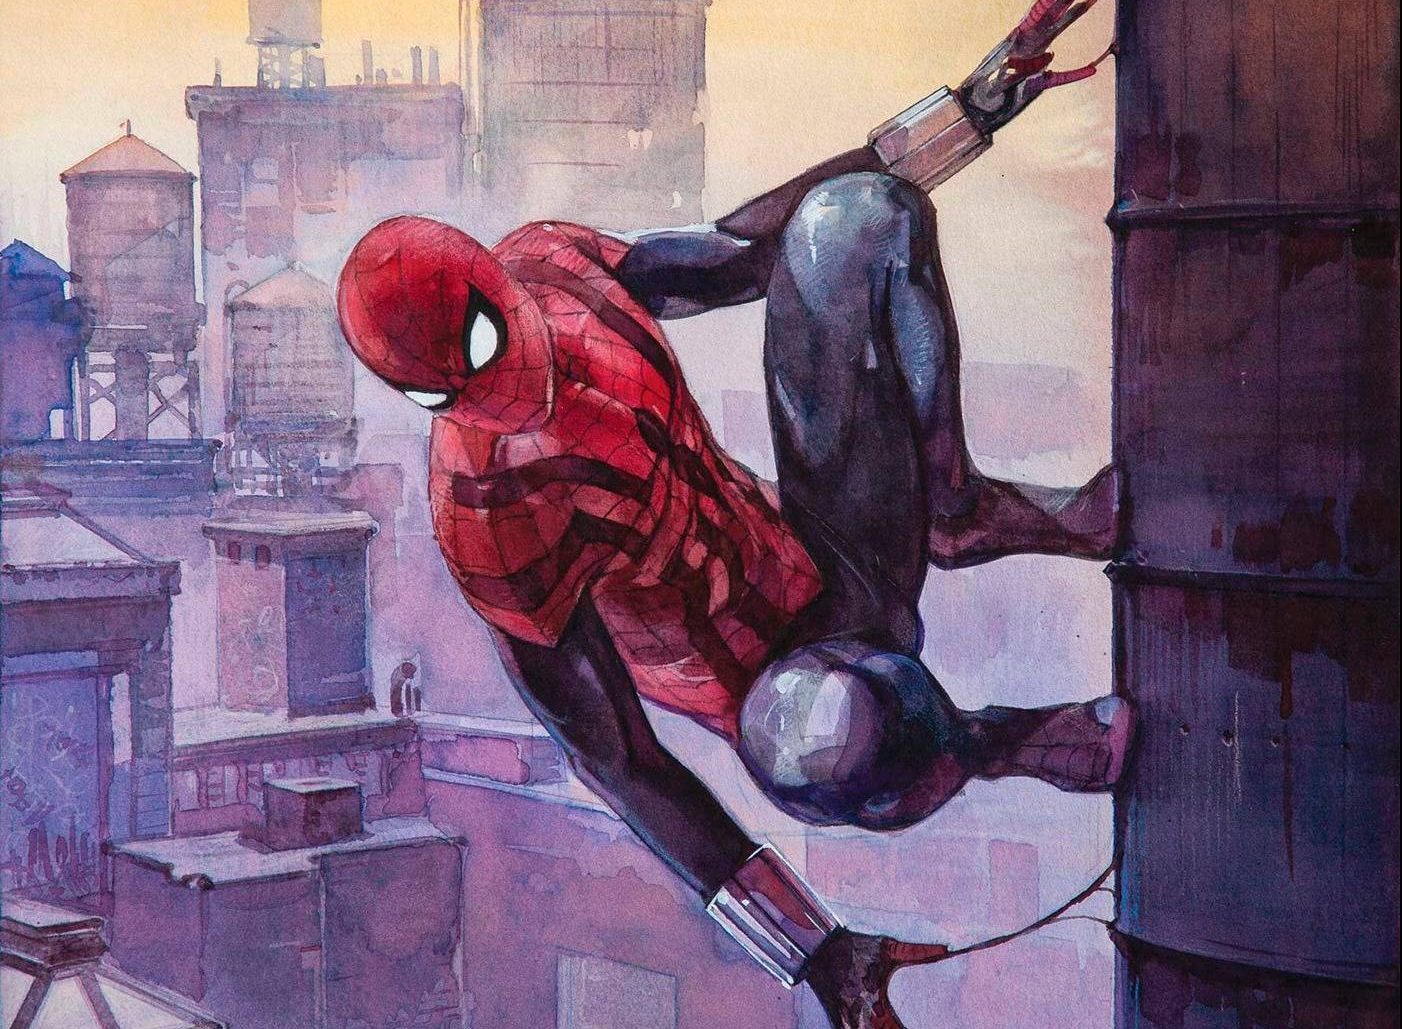 Ben Reilly: Spider-Man #1